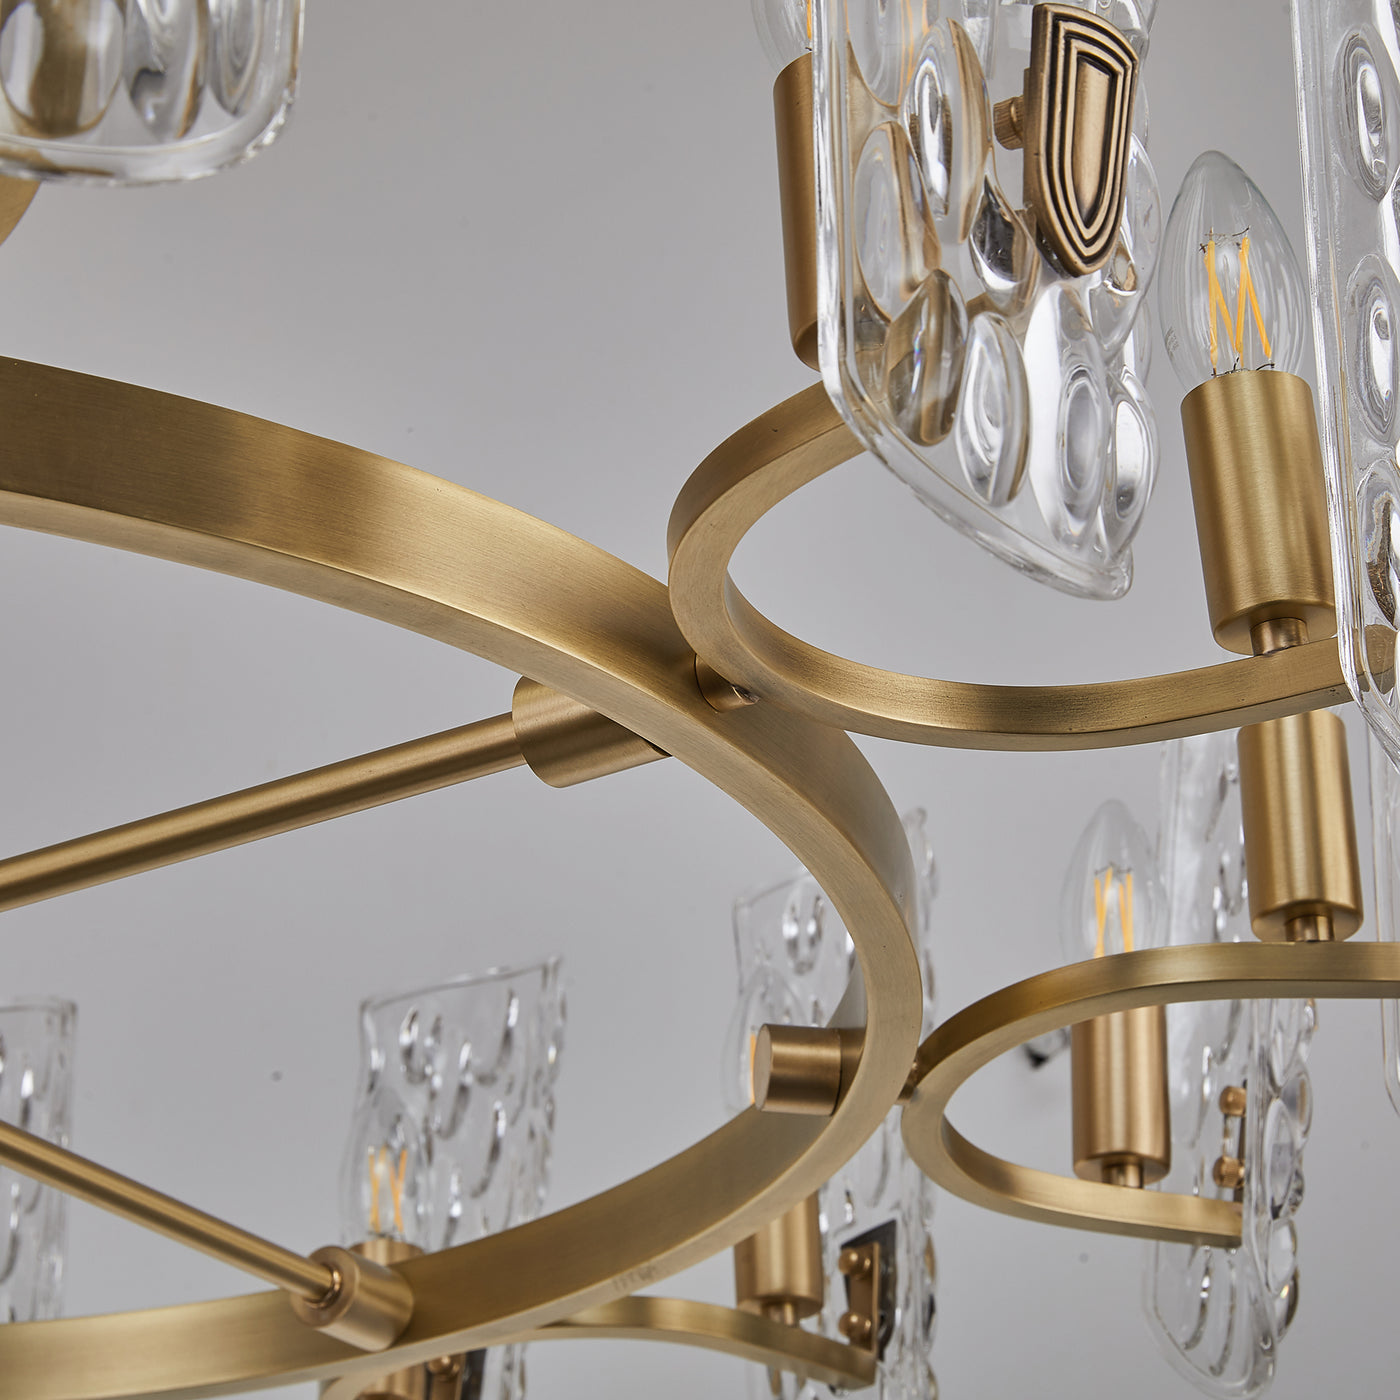 Water pattern glass gold chandelier